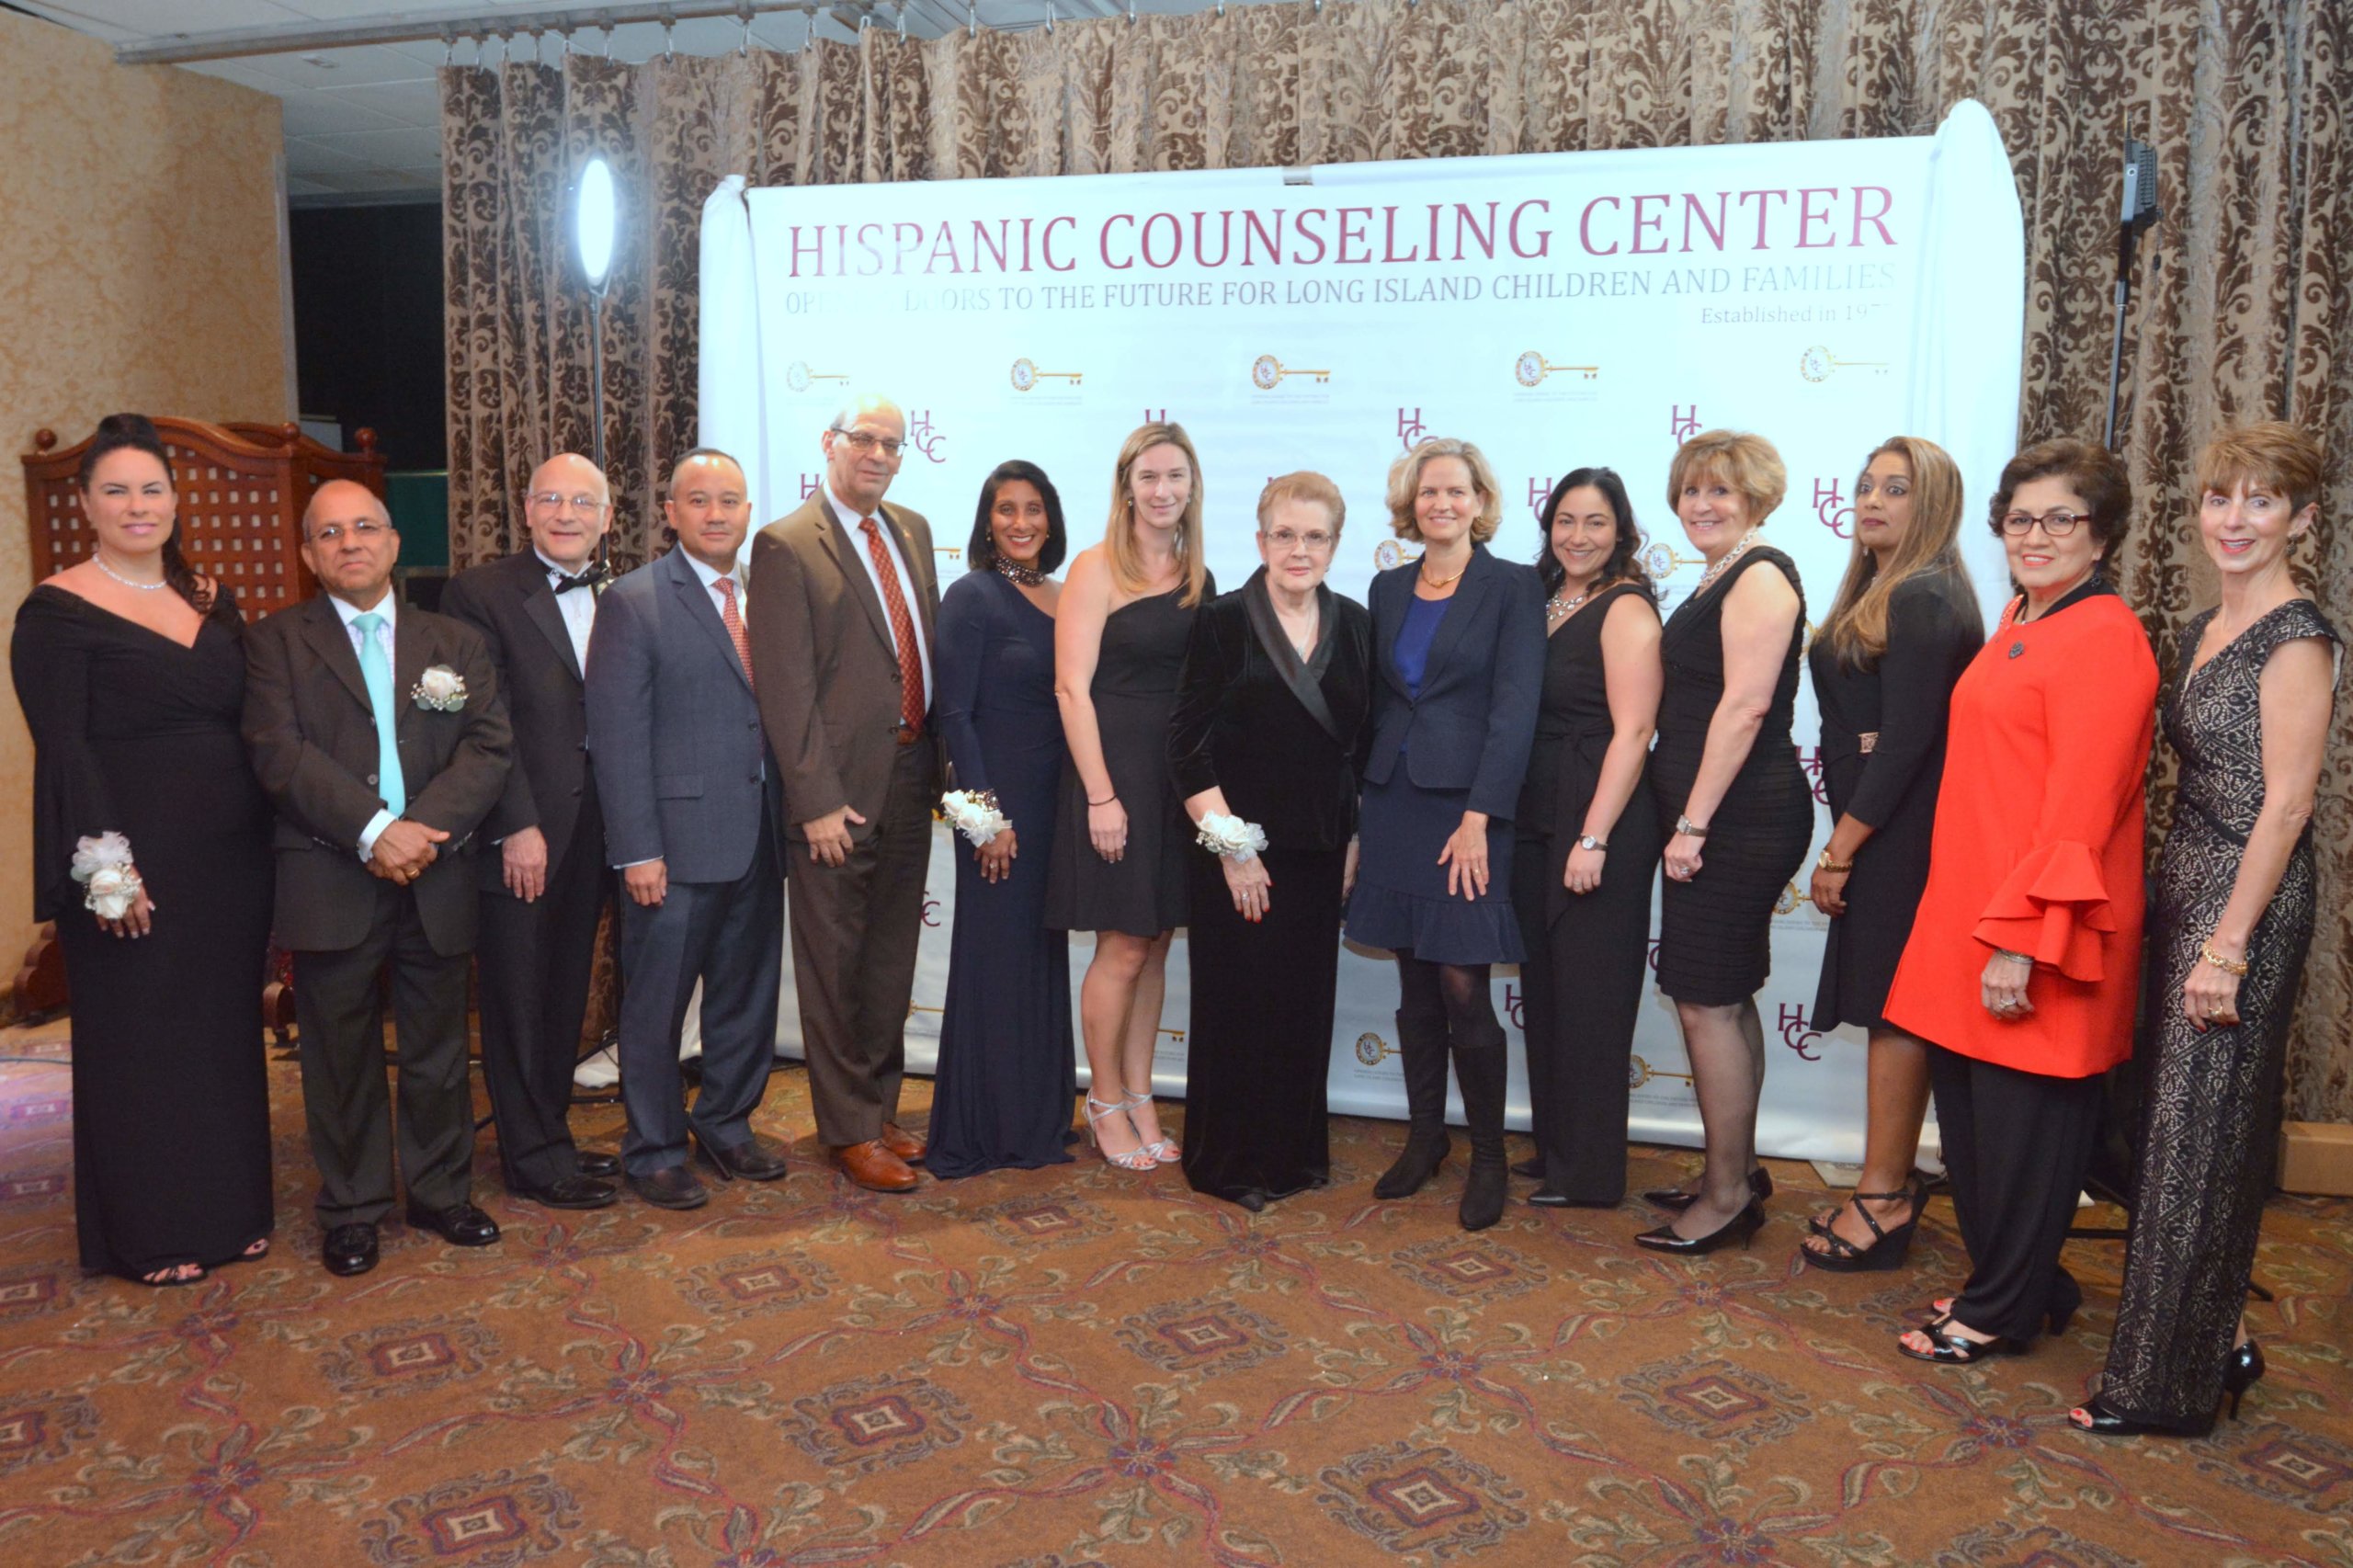 Hispanic Counseling Center celebró 41 años de servicio a la comunidad